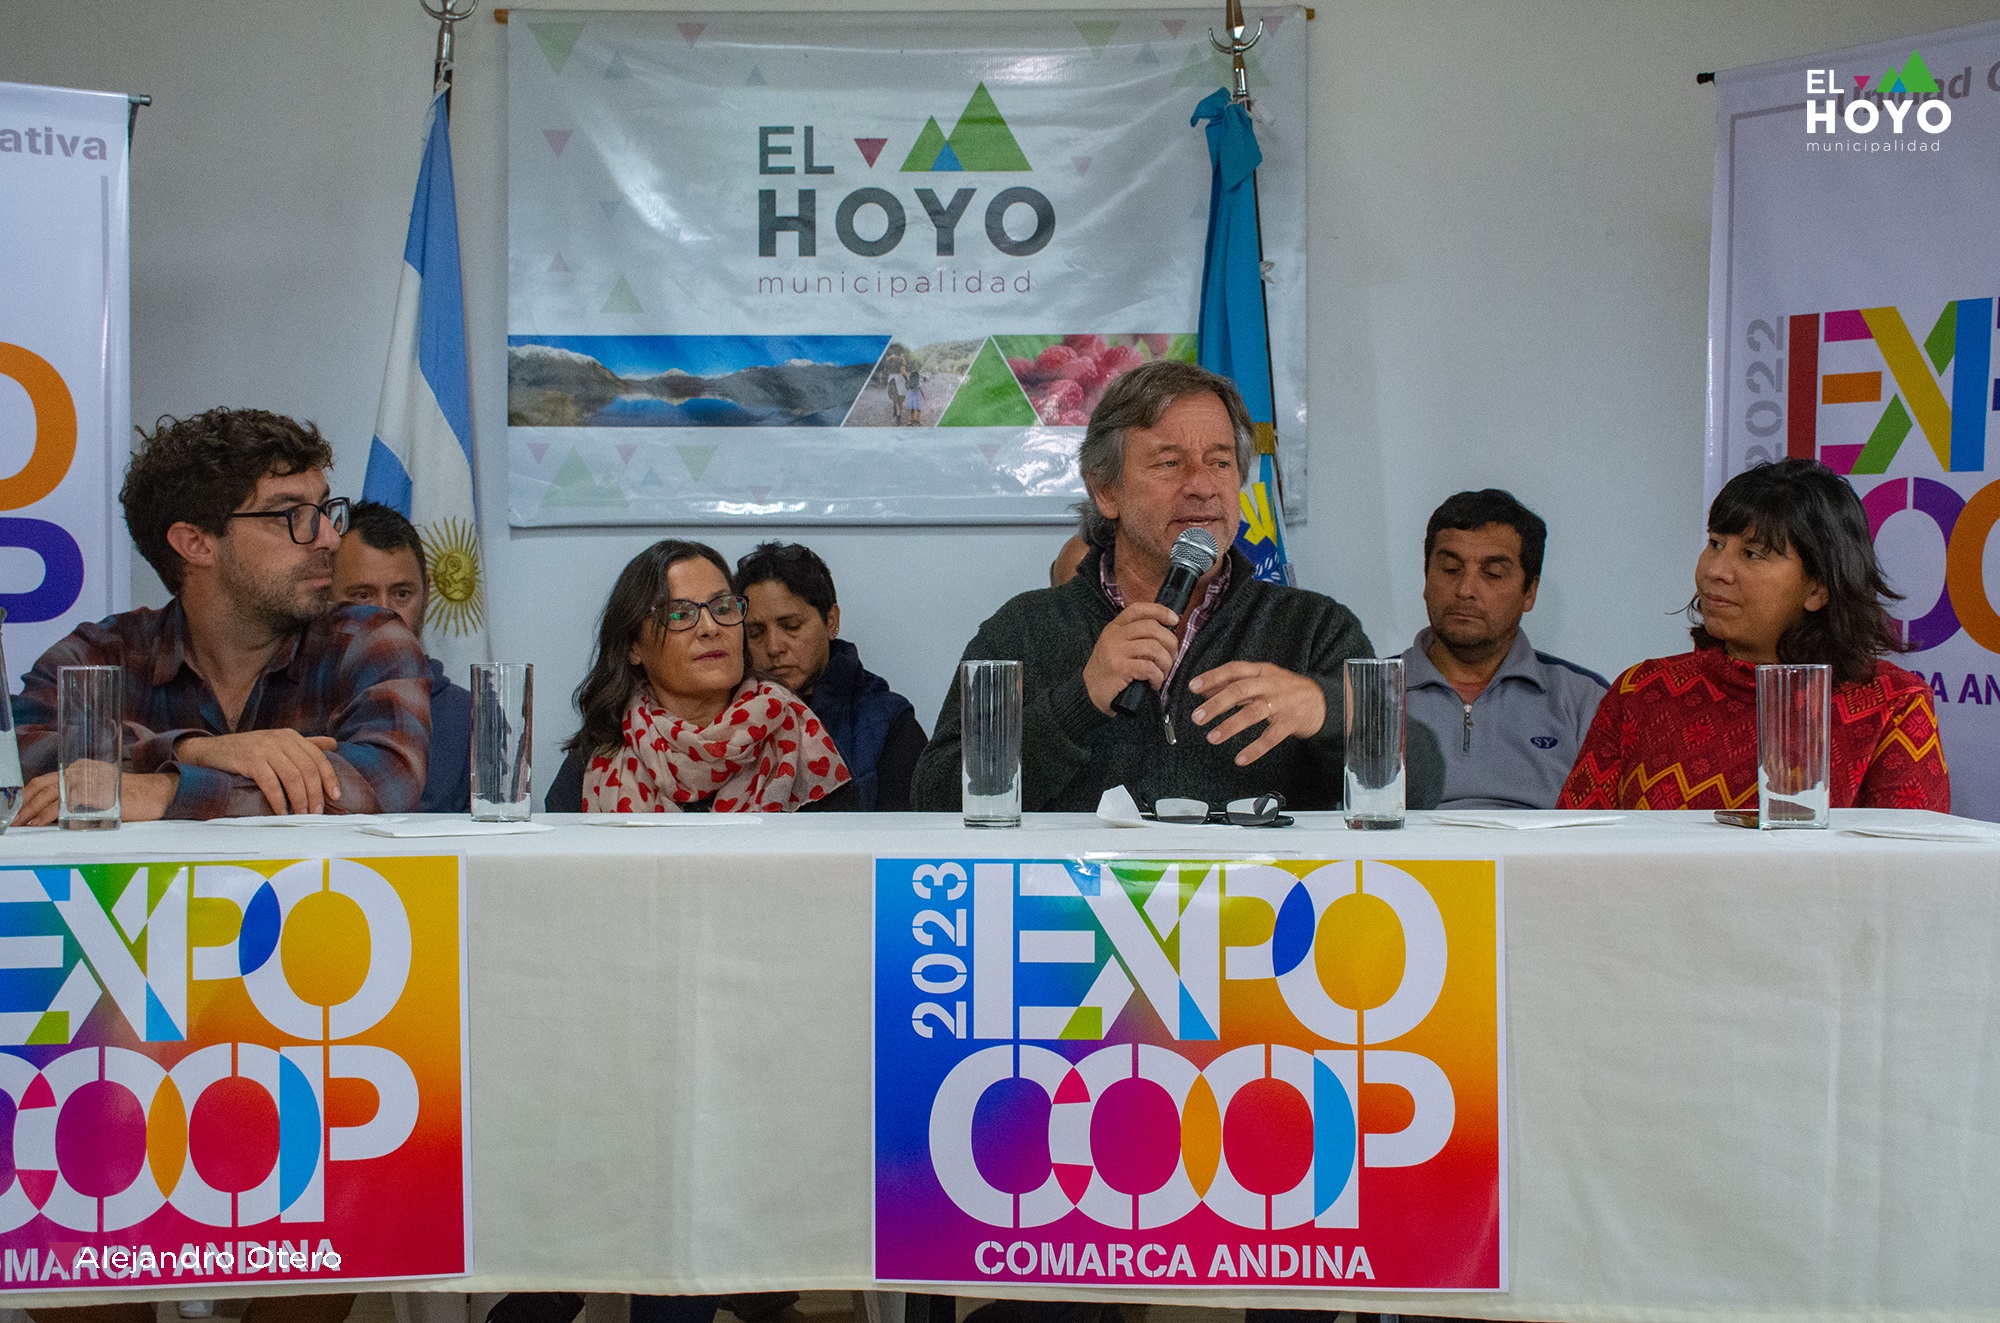 El Hoyo: Huisman anunció otra edición de la Expocoop de la Comarca Andina